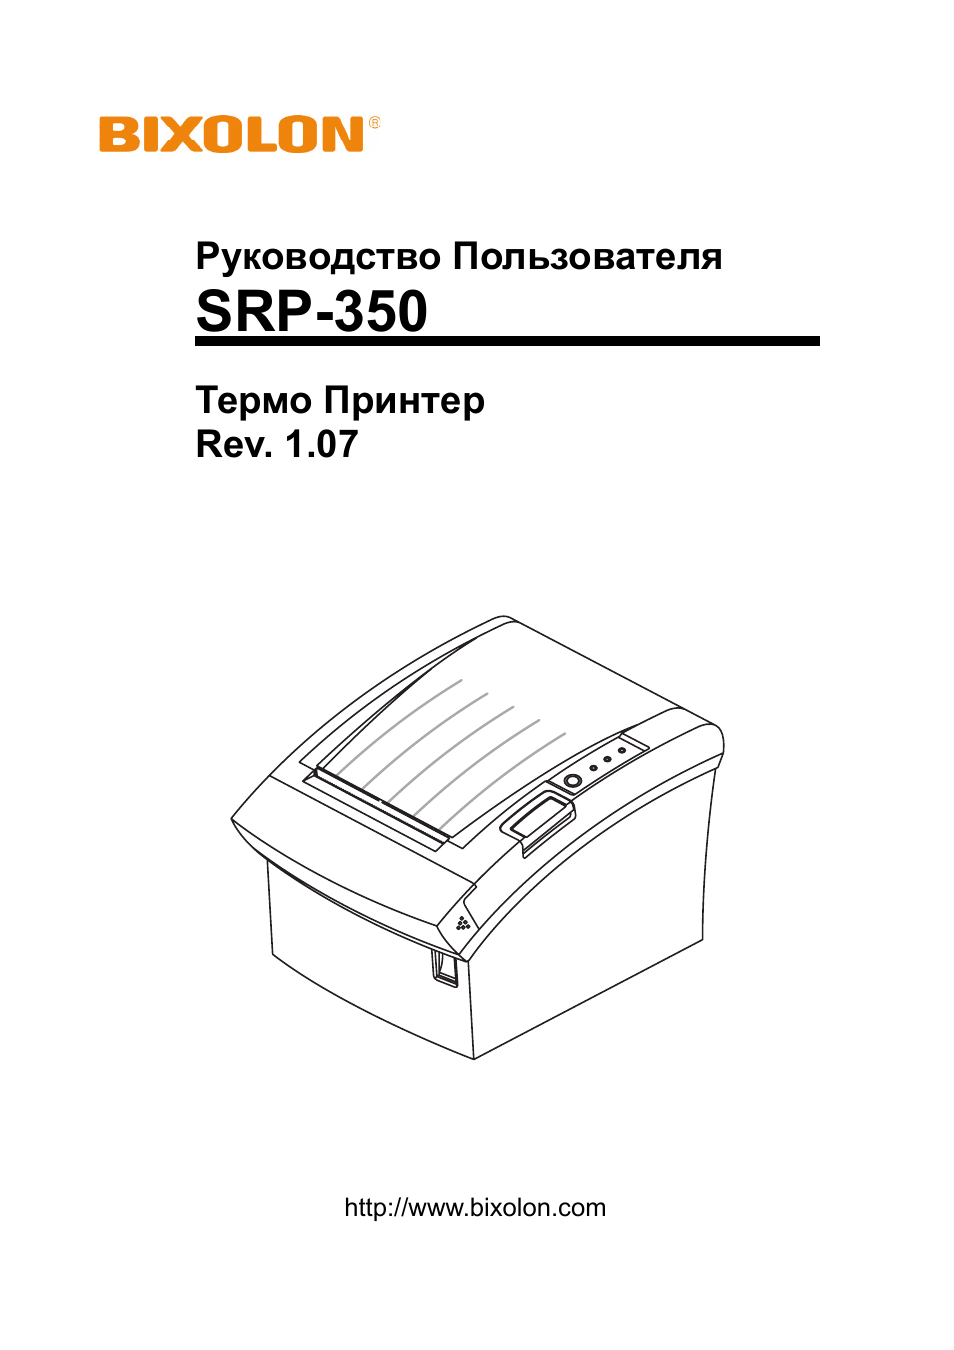 Инструкция по эксплуатации BIXOLON SRP-350 | 21 cтраница